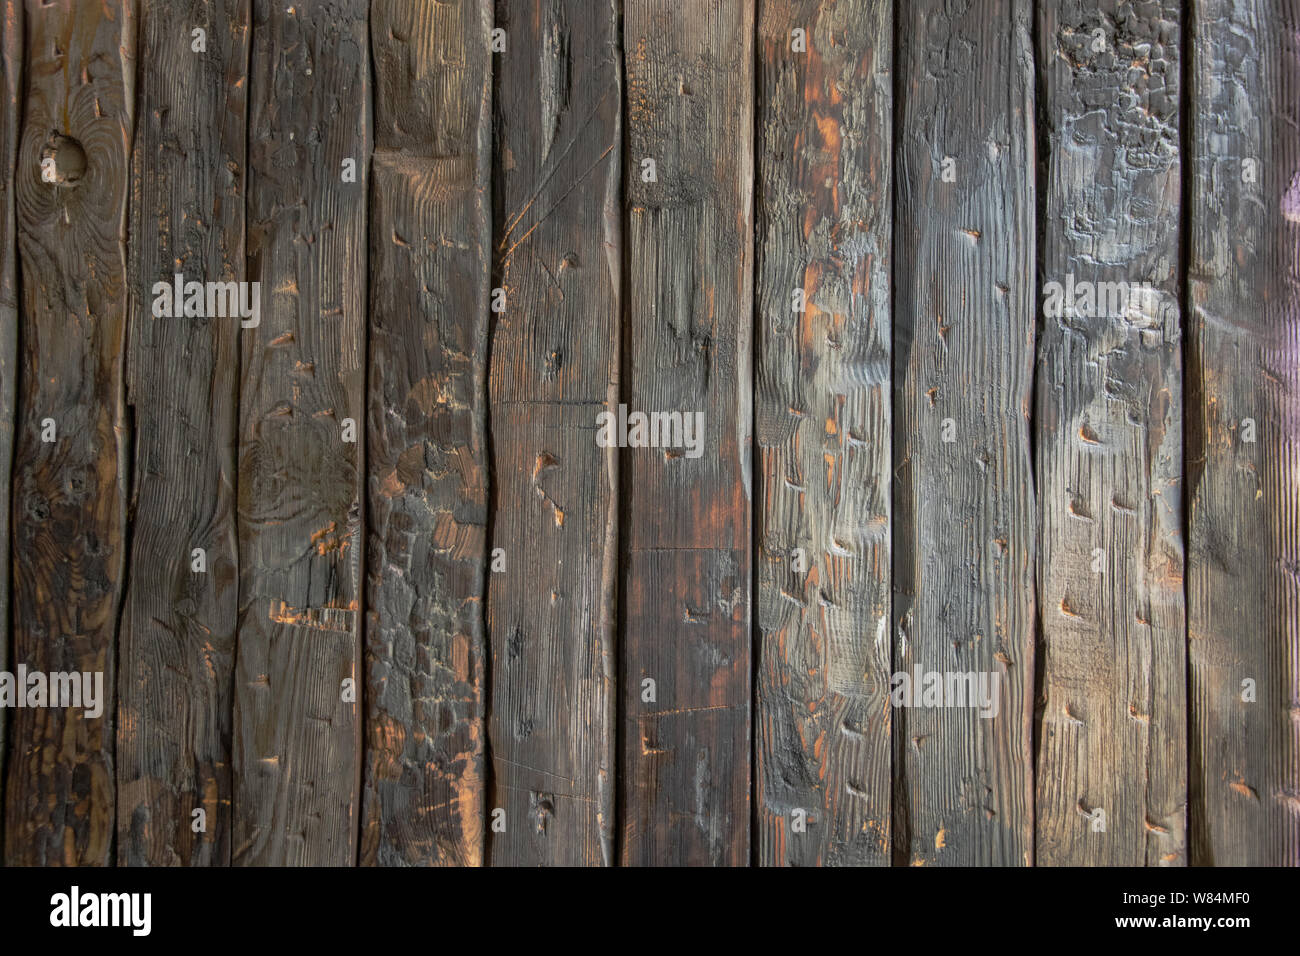 Gỗ - Hình ảnh này sẽ đưa bạn đến thế giới của những tác phẩm nghệ thuật được tạo ra từ gỗ. Hình ảnh tuyệt đẹp này sẽ cho phép bạn khám phá tất cả các ứng dụng khác nhau của gỗ, từ những tùy chọn thay đổi hình dáng đến các loại gỗ khác nhau được sử dụng trên khắp thế giới.